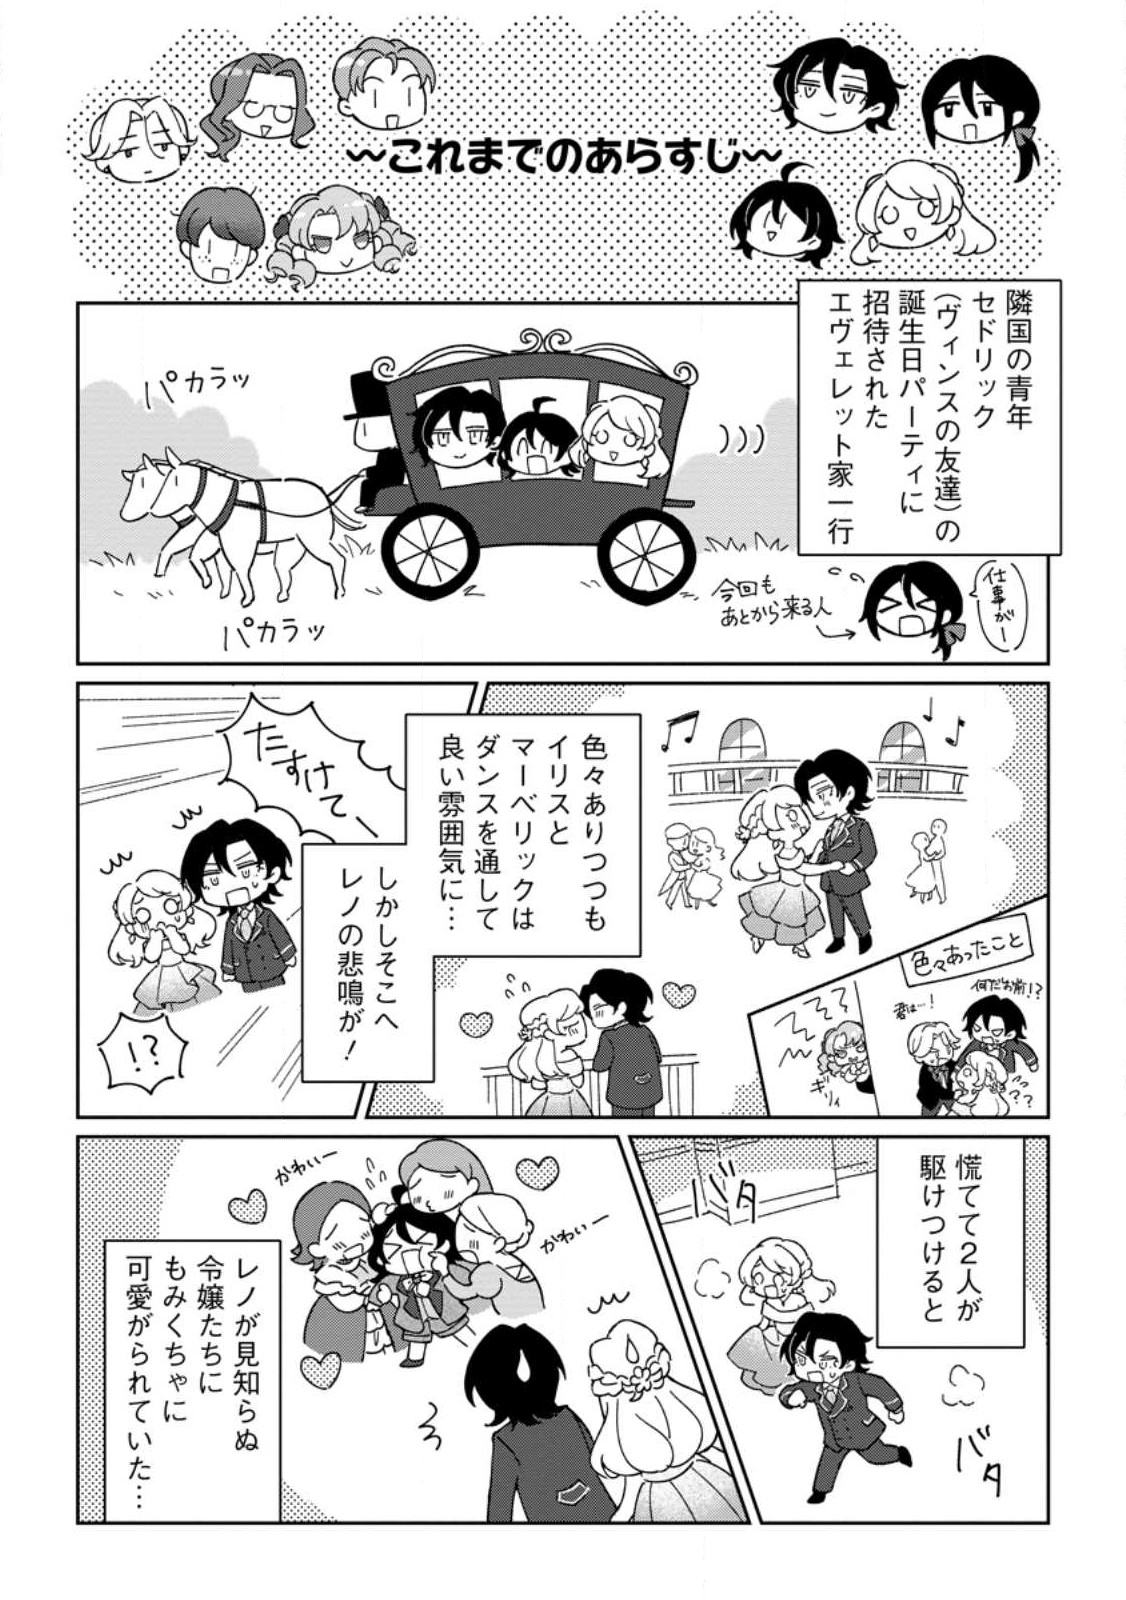 Konyaku Hakisare-Ka wo Owareta Shoujo no Te wo Tori, Tensai Majutsushi wa Yuuga ni Hizamazuku - Chapter 16.1 - Page 2